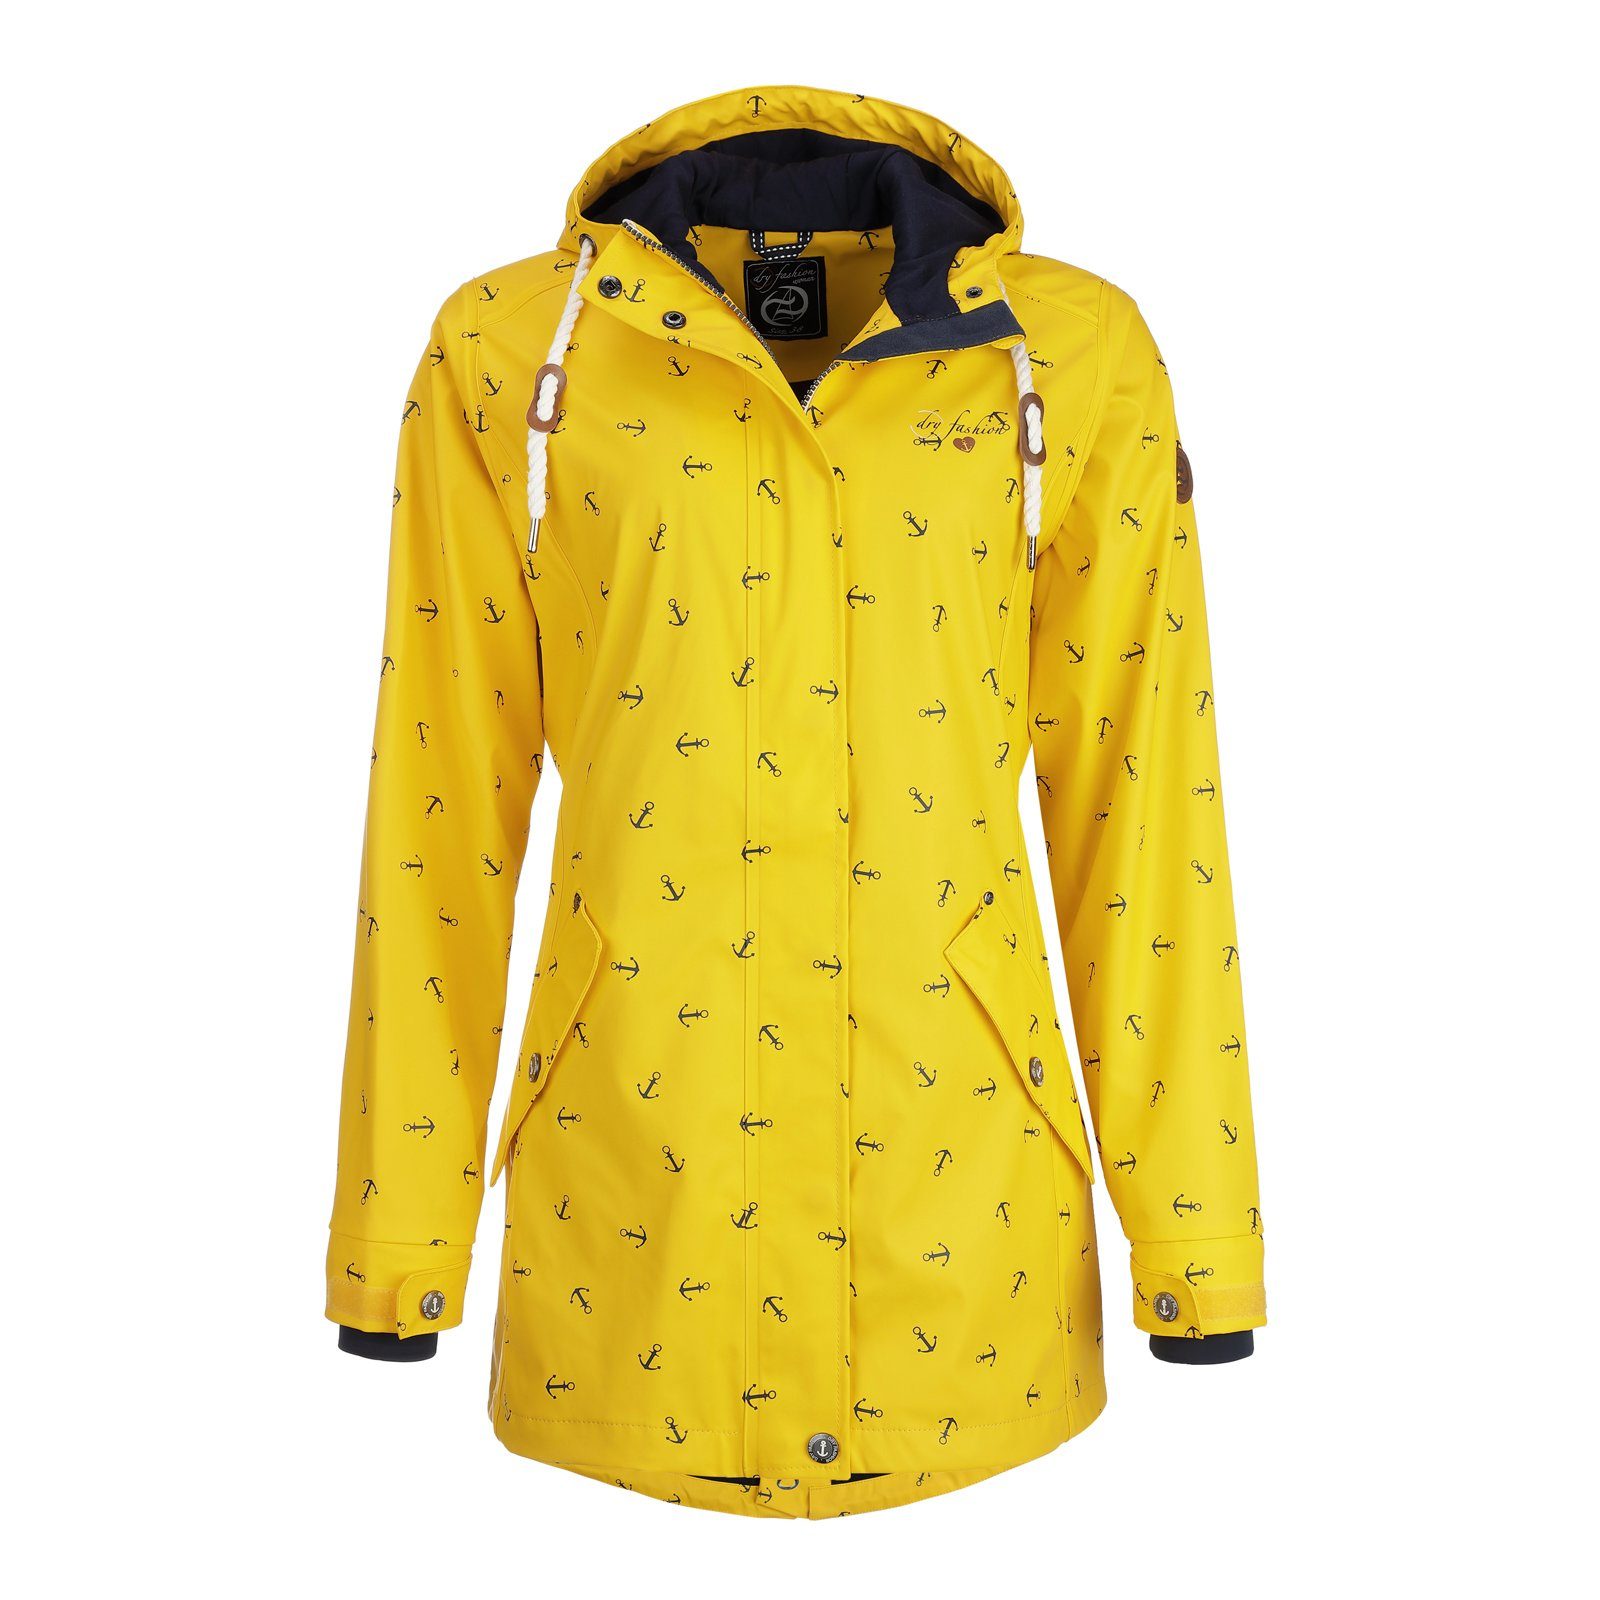 Dry Fashion Regenjacke Damen Regenmantel Cuxhaven Anker-Print - Jacke mit Kapuze wasserdicht gelb